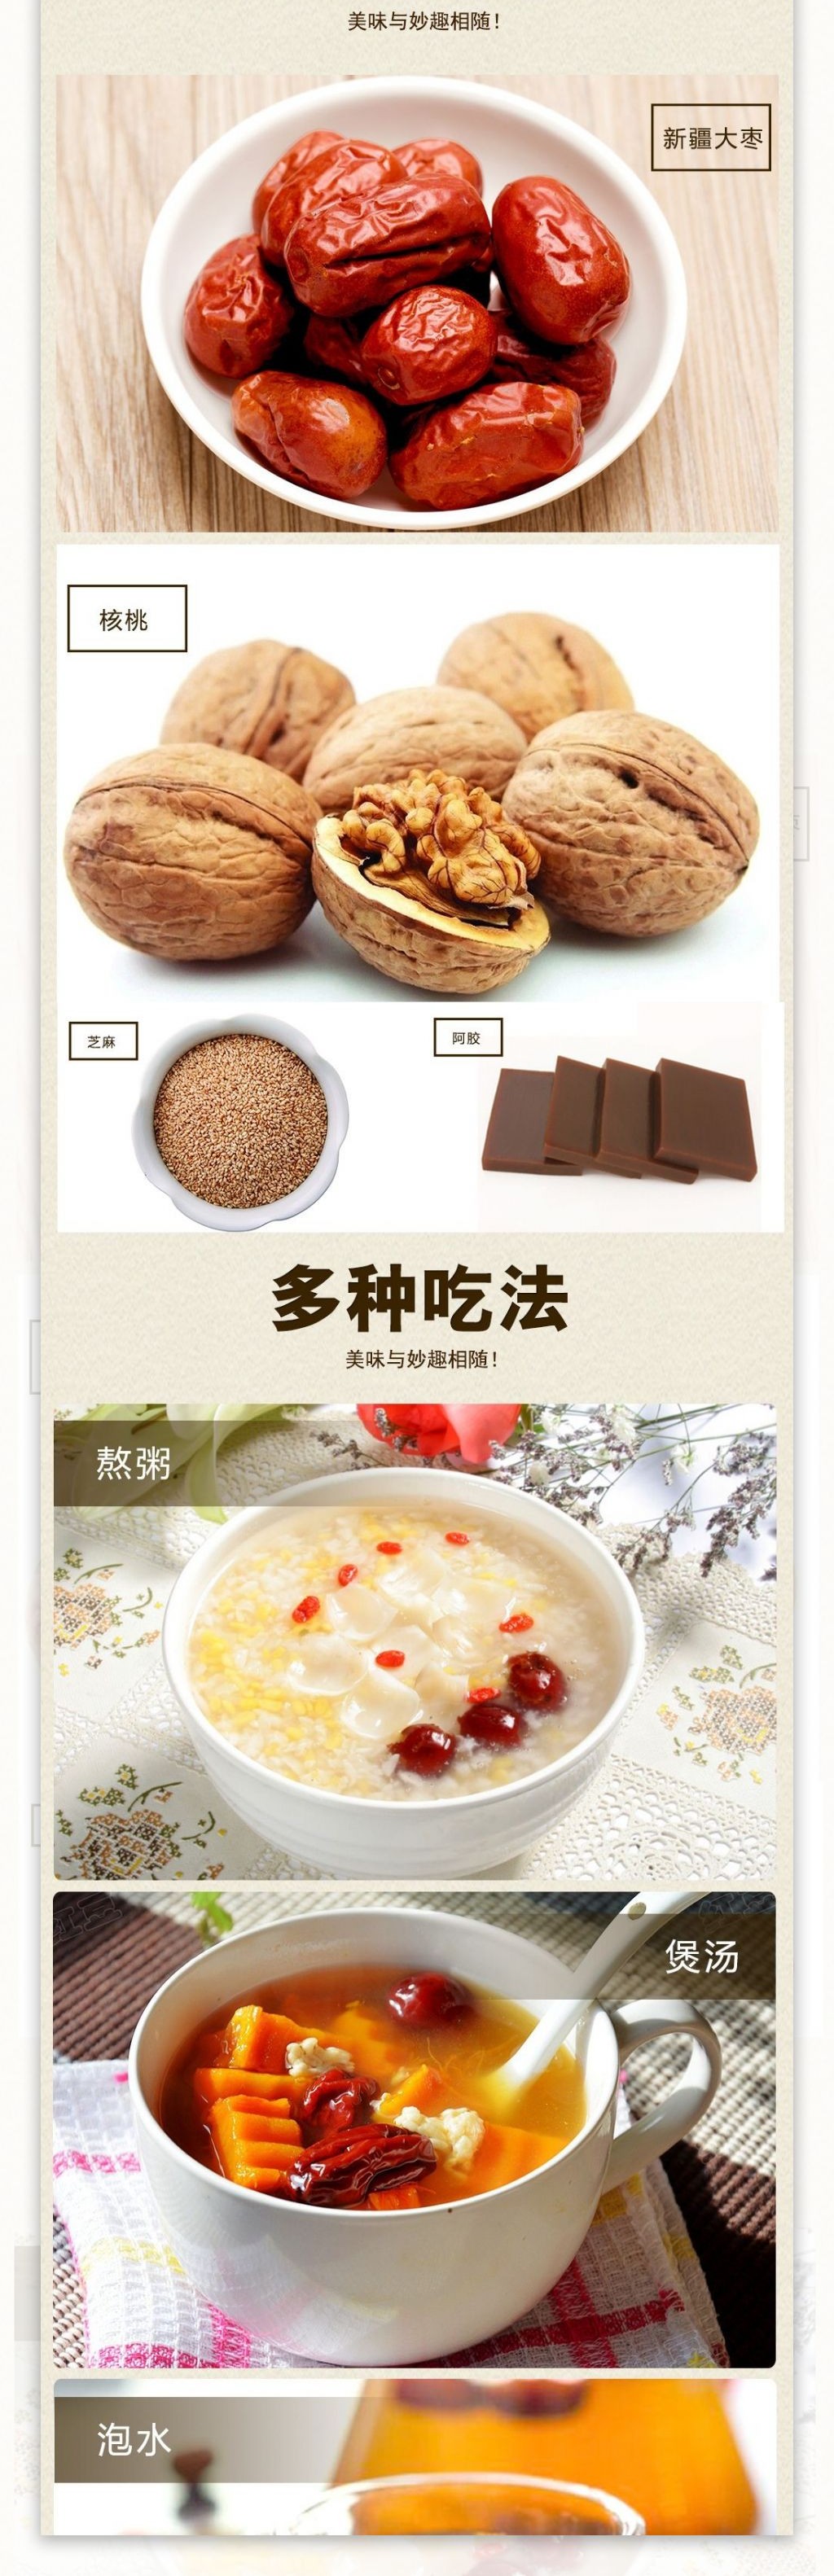 枣夹核桃淘宝电商美食食品详情页